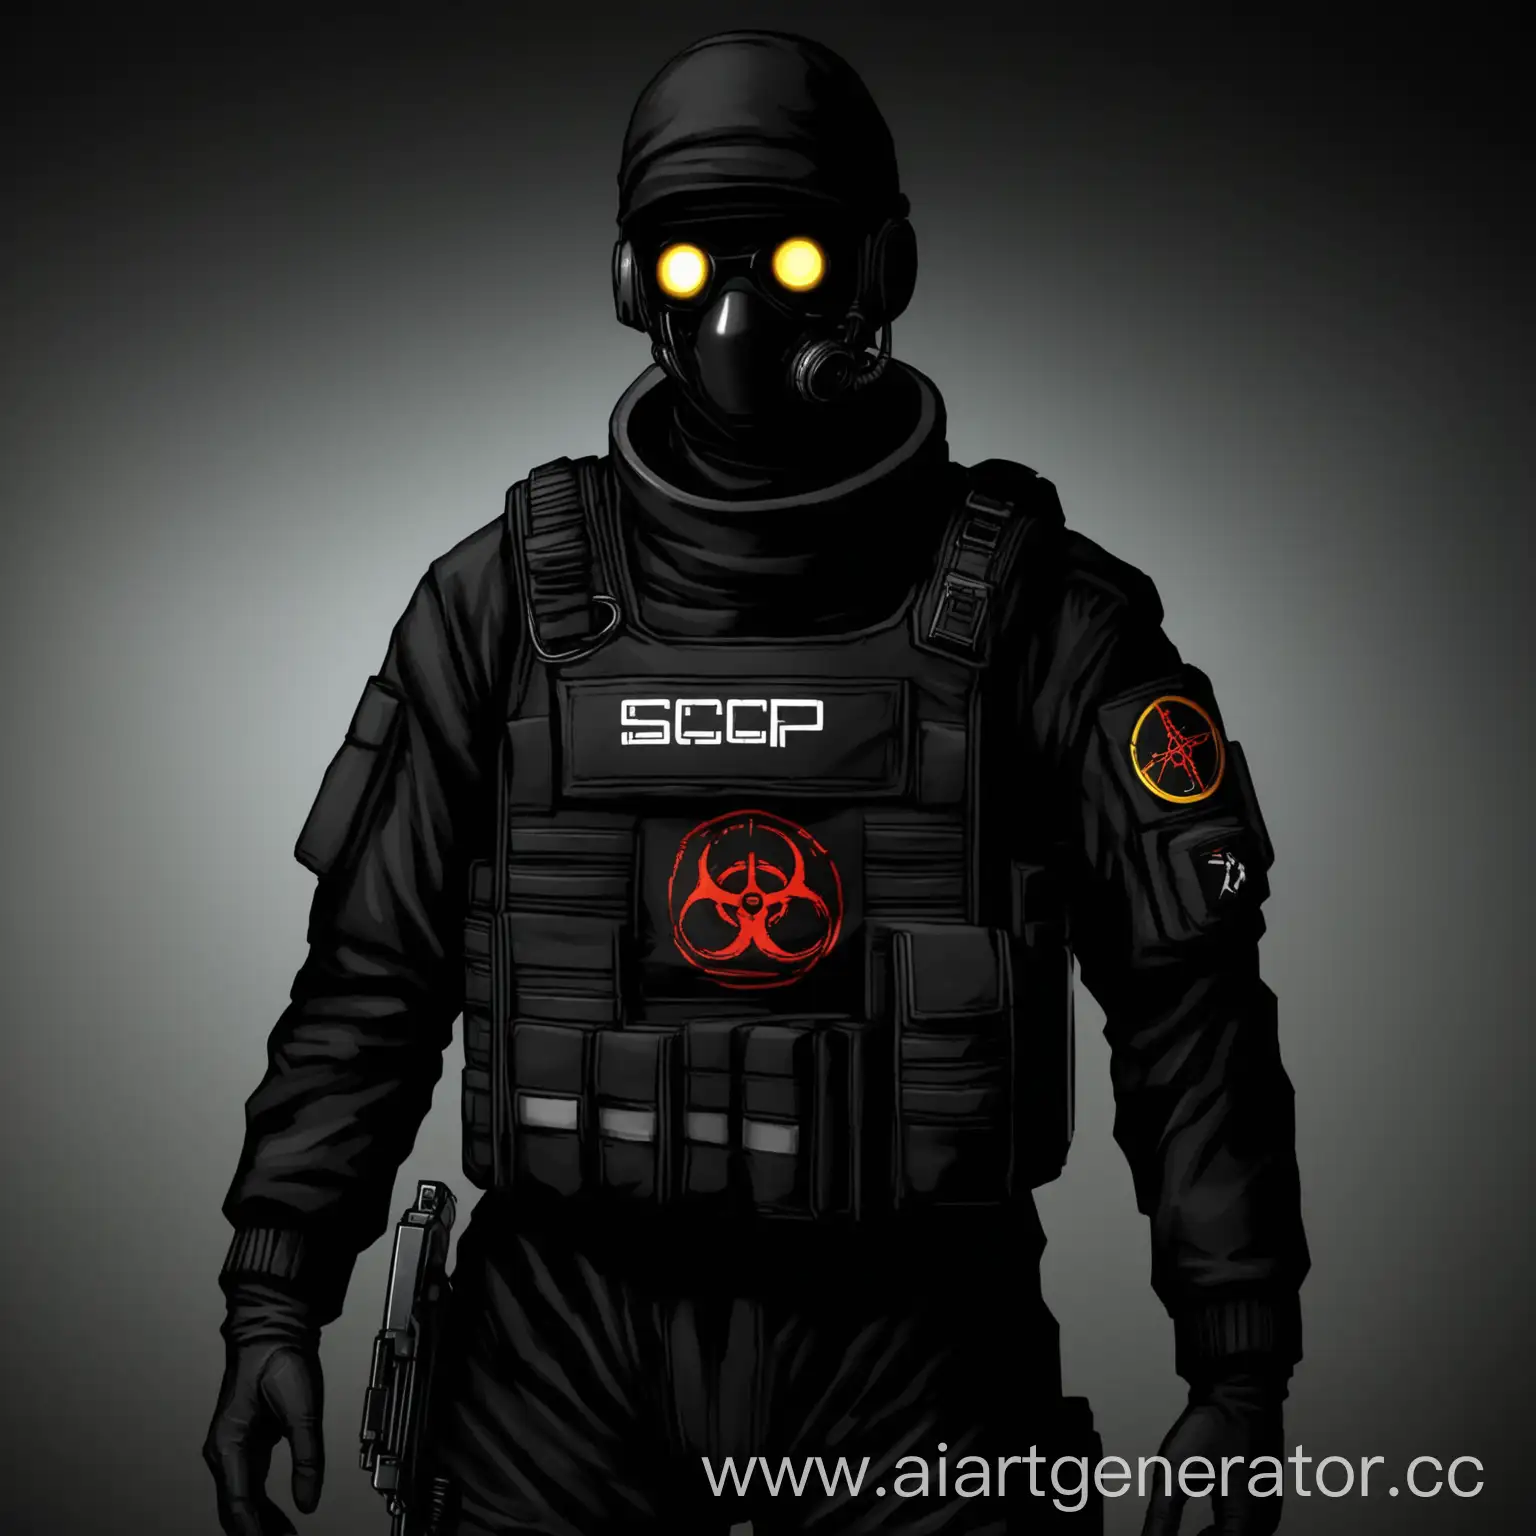 оперативник в черной форме  с шефроном на груди  фонд scp команда проекта